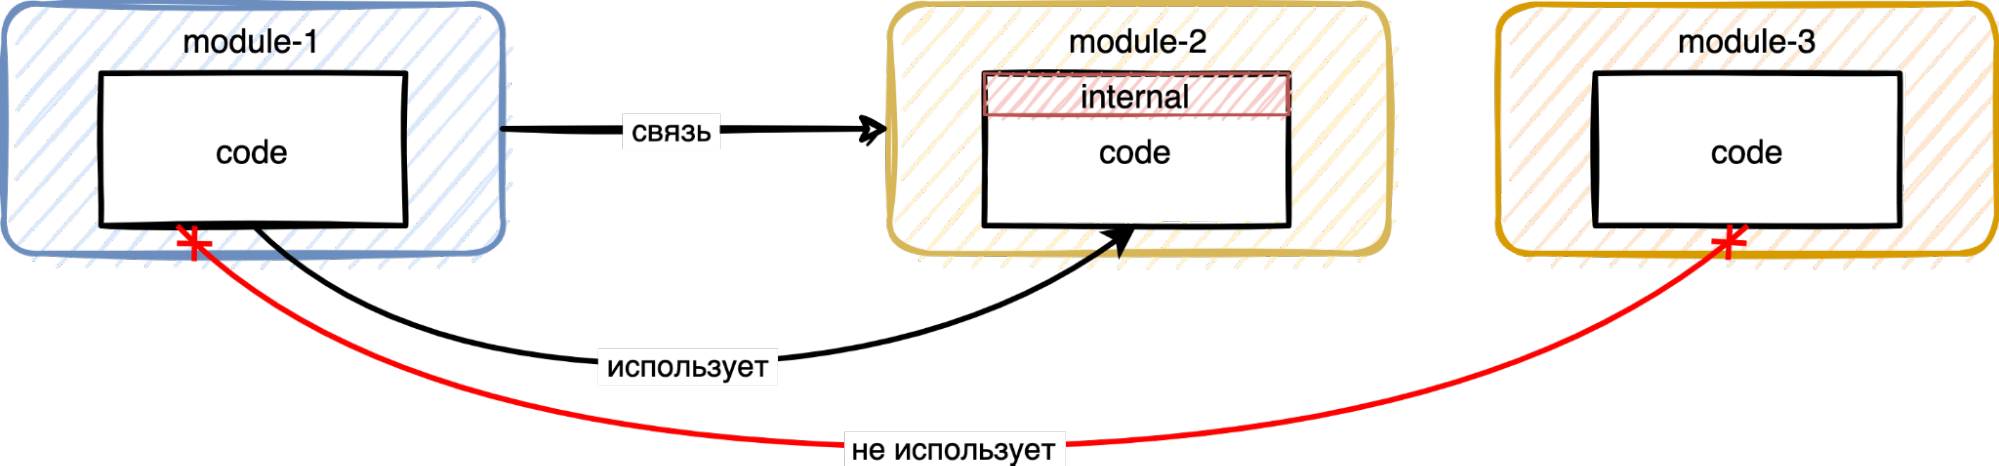 «связь» означает отношения между Gradle модулями, а «использует»/«не использует» между кодовой базой этих модулей